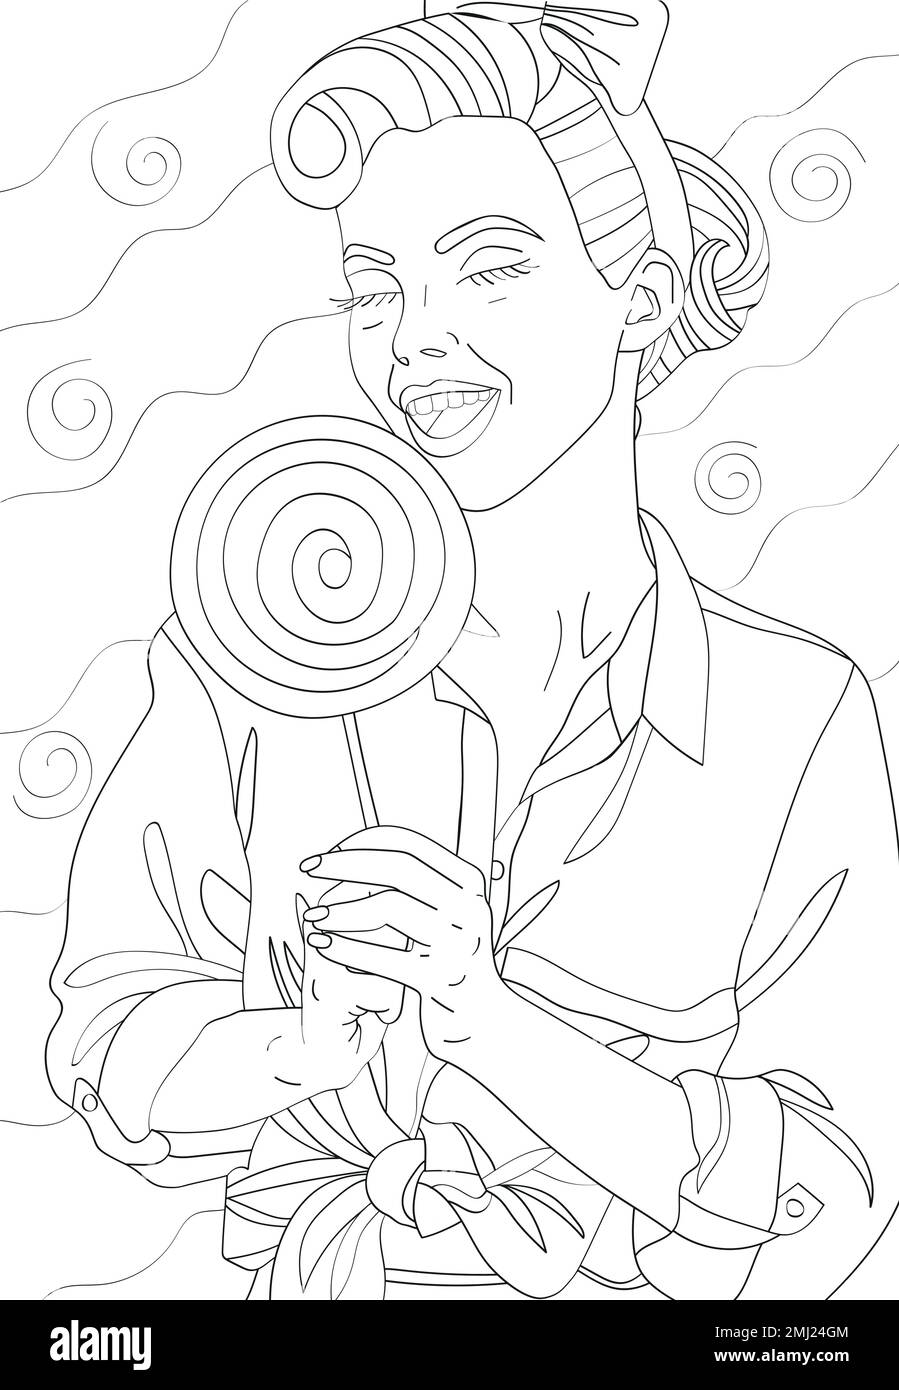 La fille tient une grande lollipop dans ses mains. Coloration antistress. Illustration vectorielle noir et blanc. Illustration de Vecteur